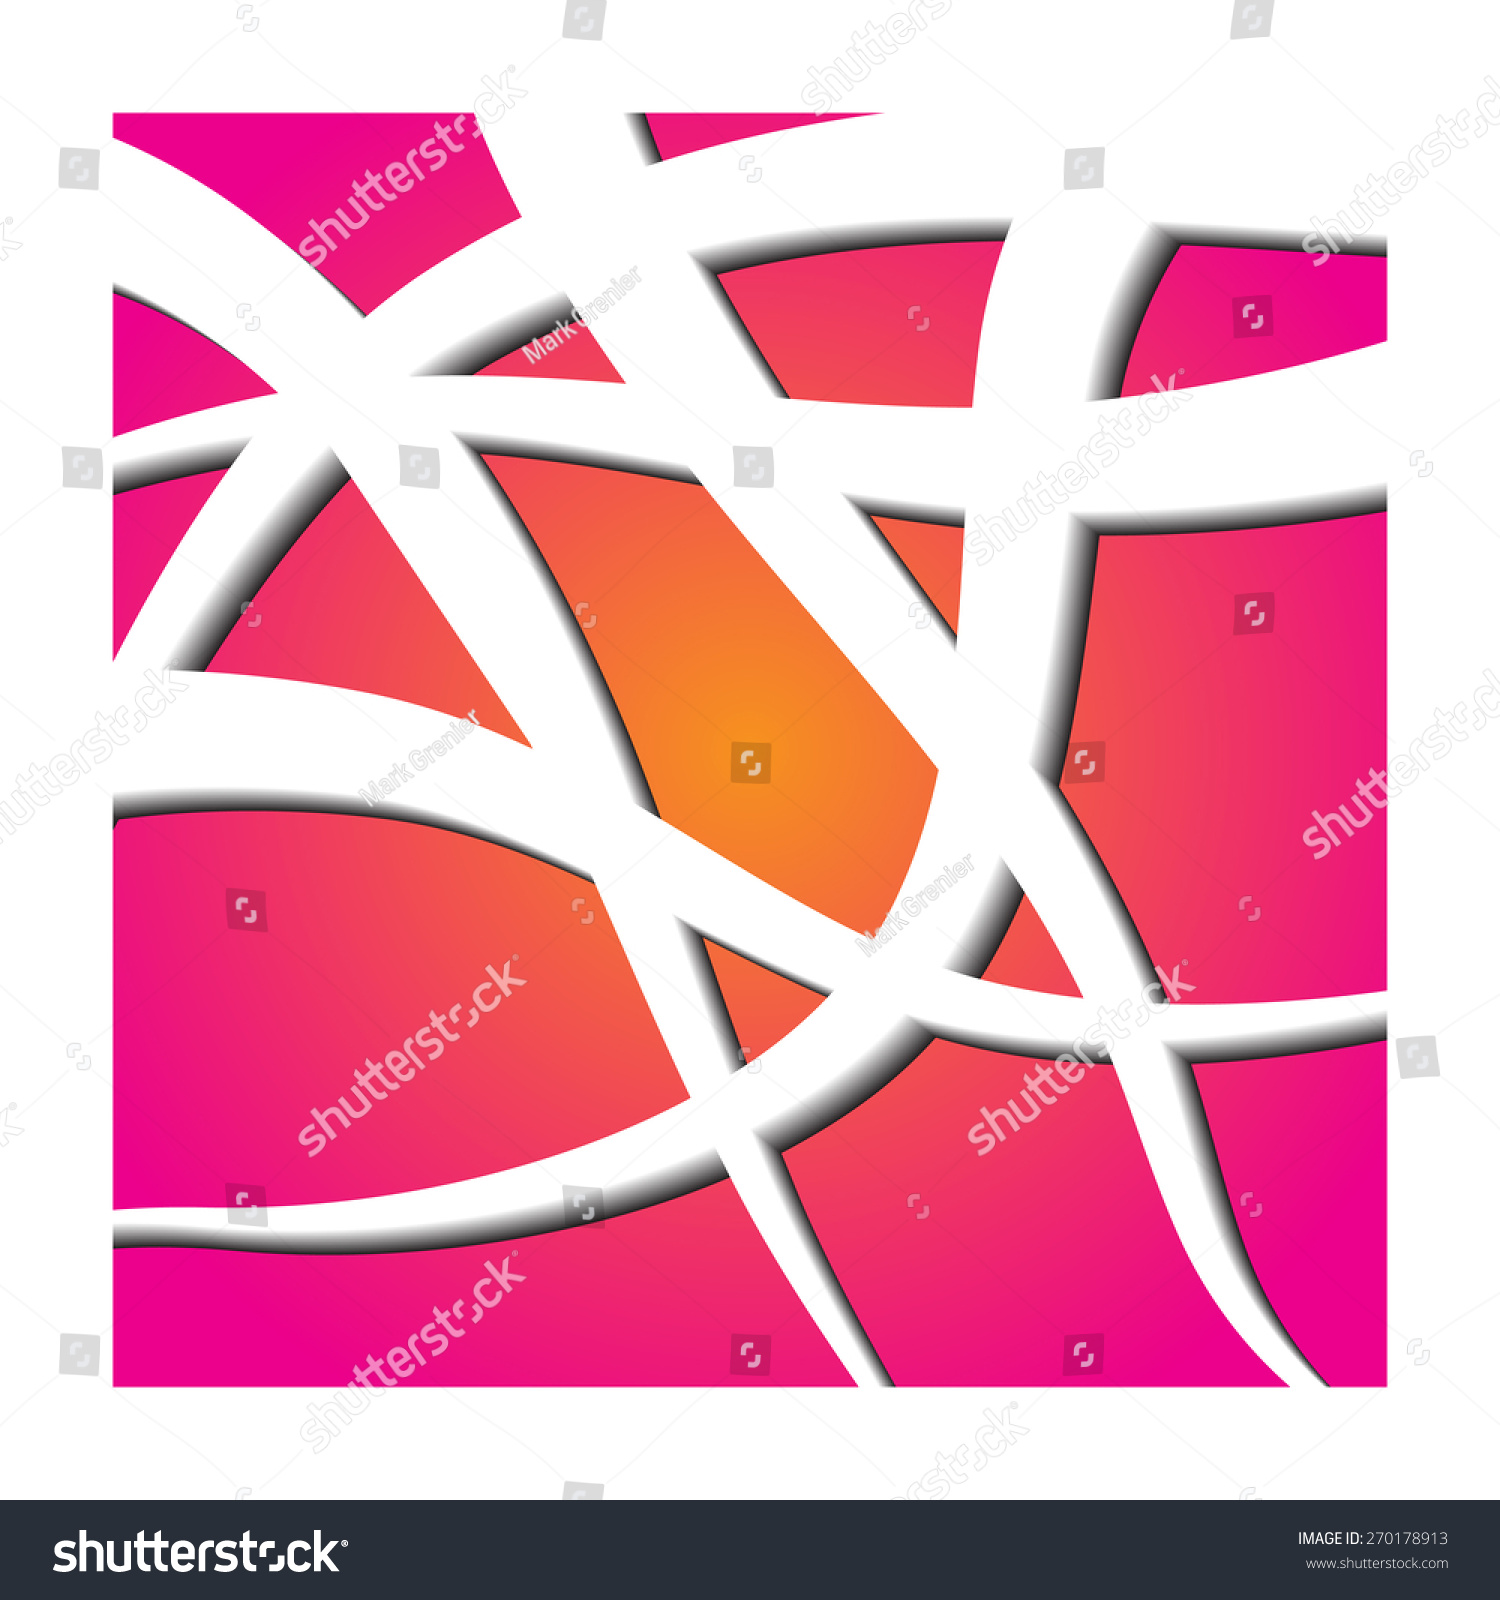 Crisscross Abstract Stock Vector 270178913 - Shutterstock